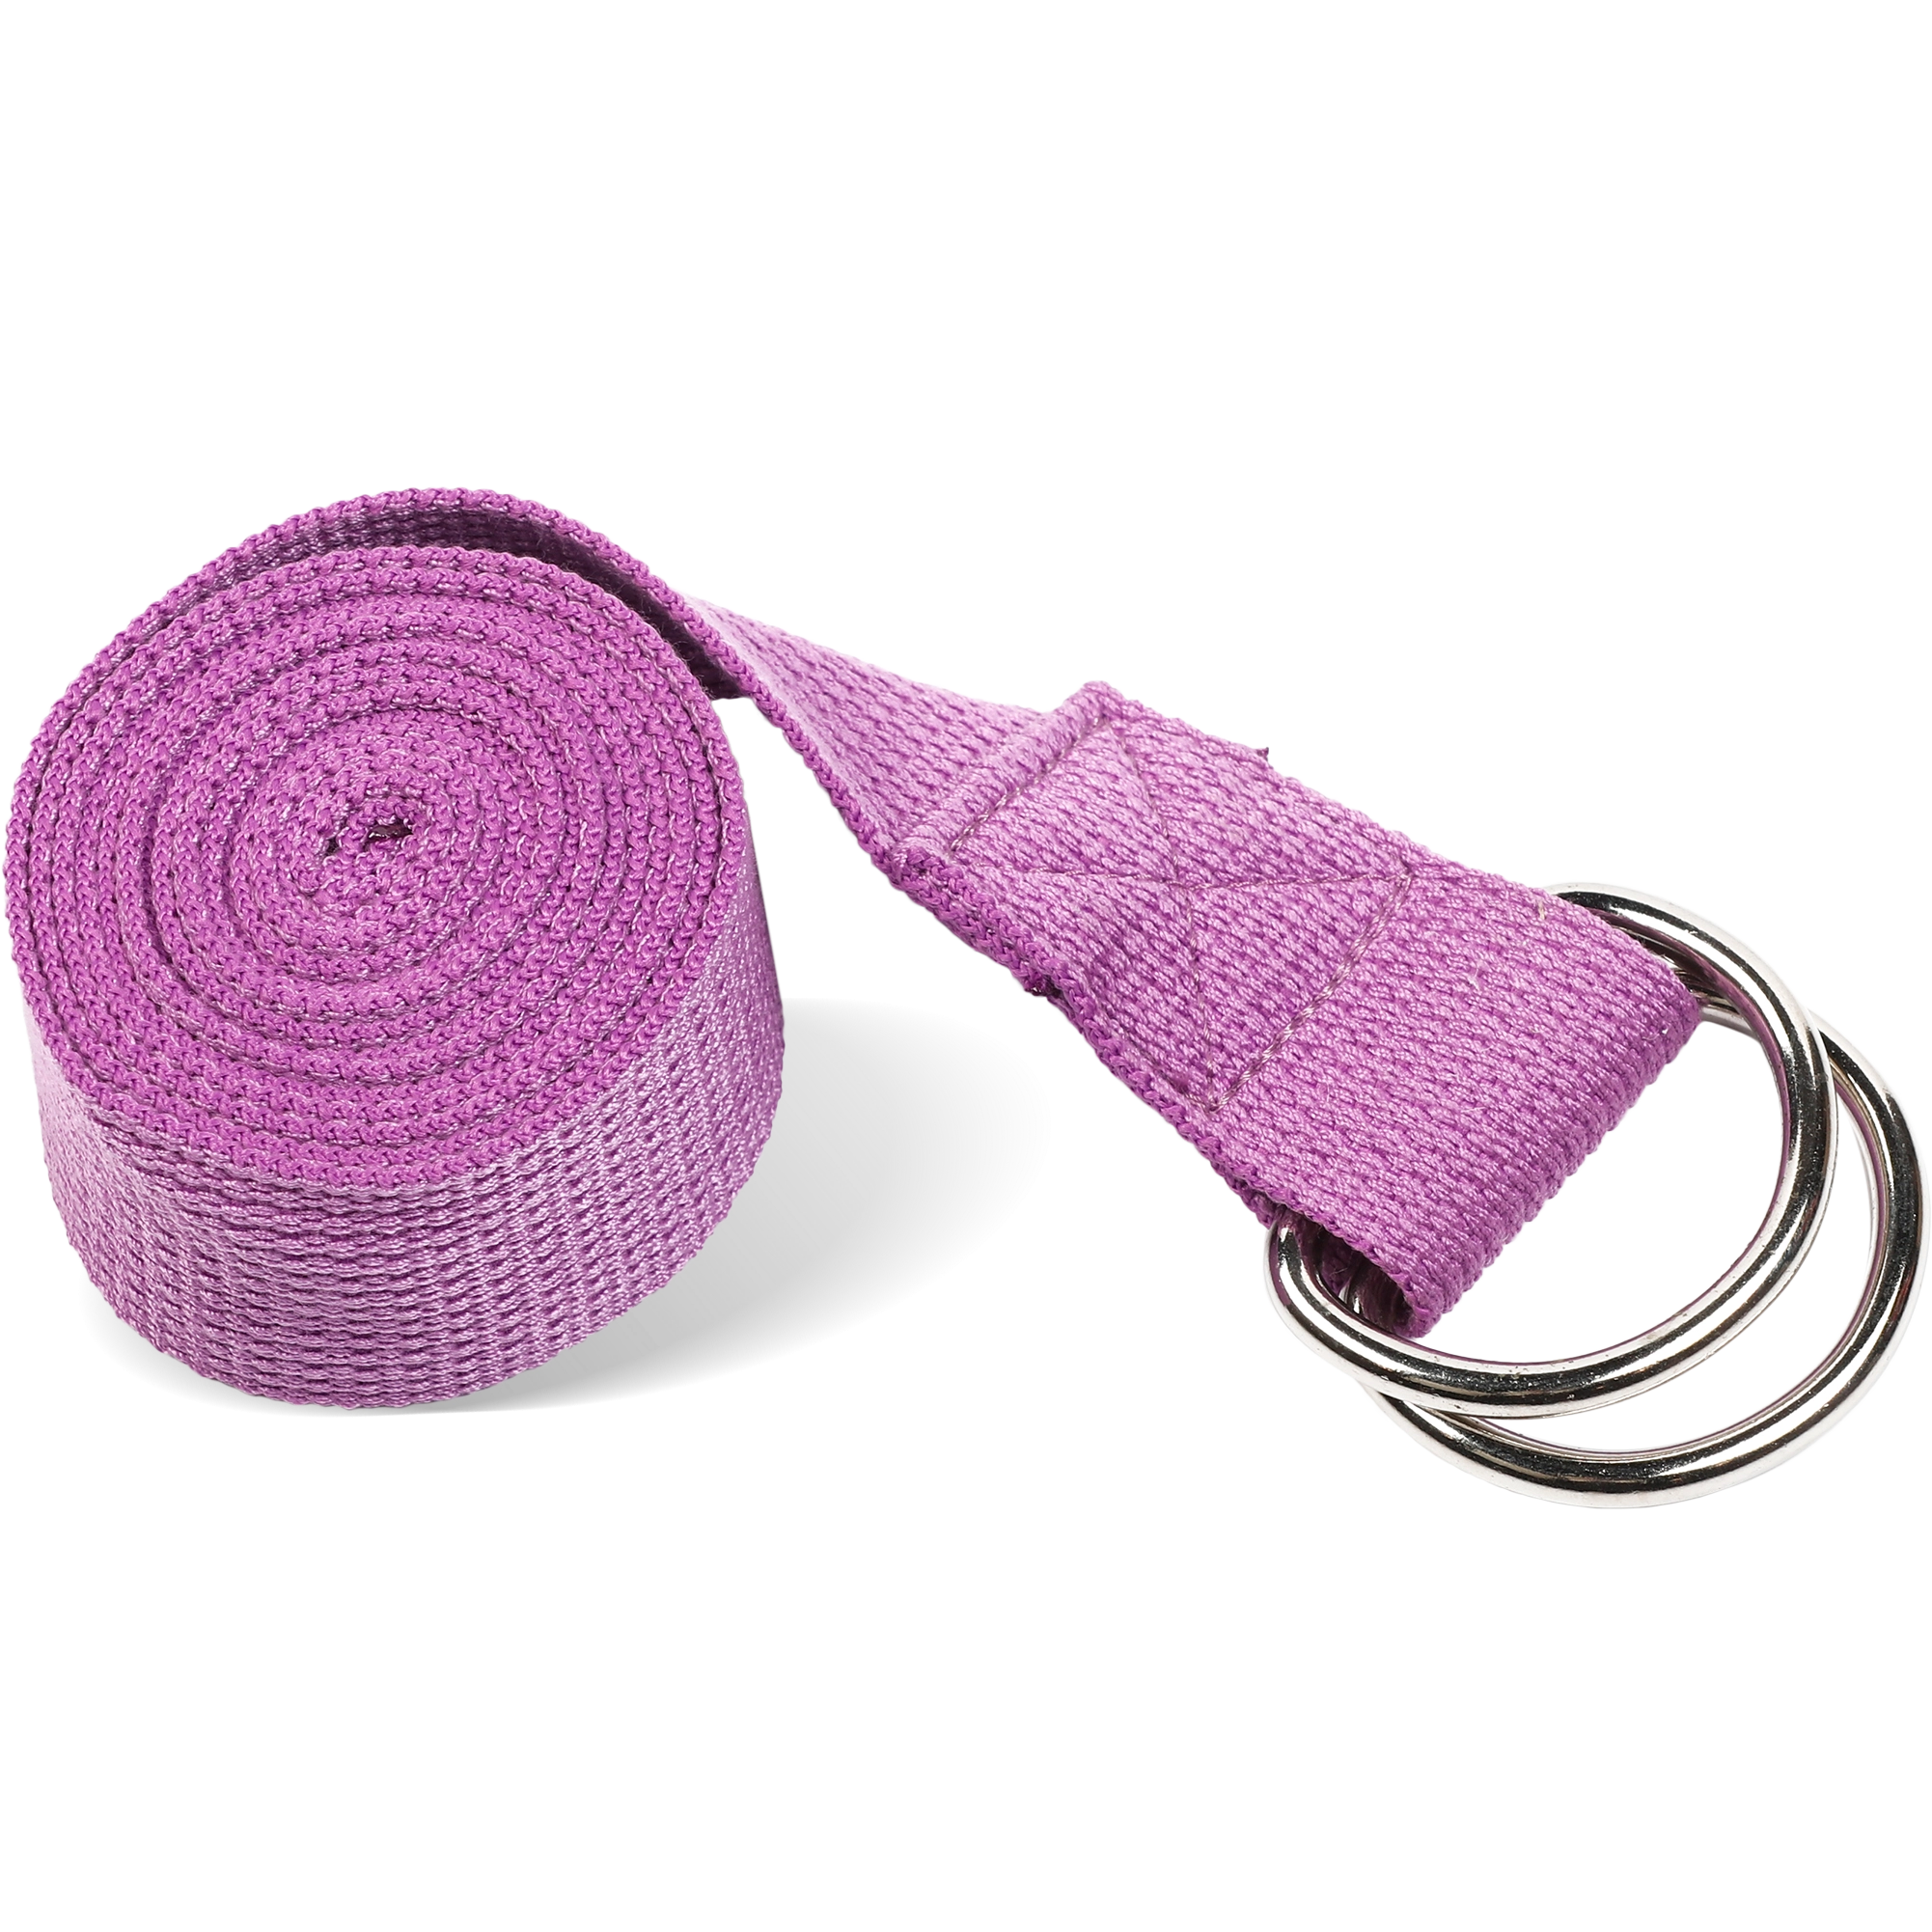 Ремень для йоги с металлическим карабином PRCTZ YOGA STRAP, фиолет.